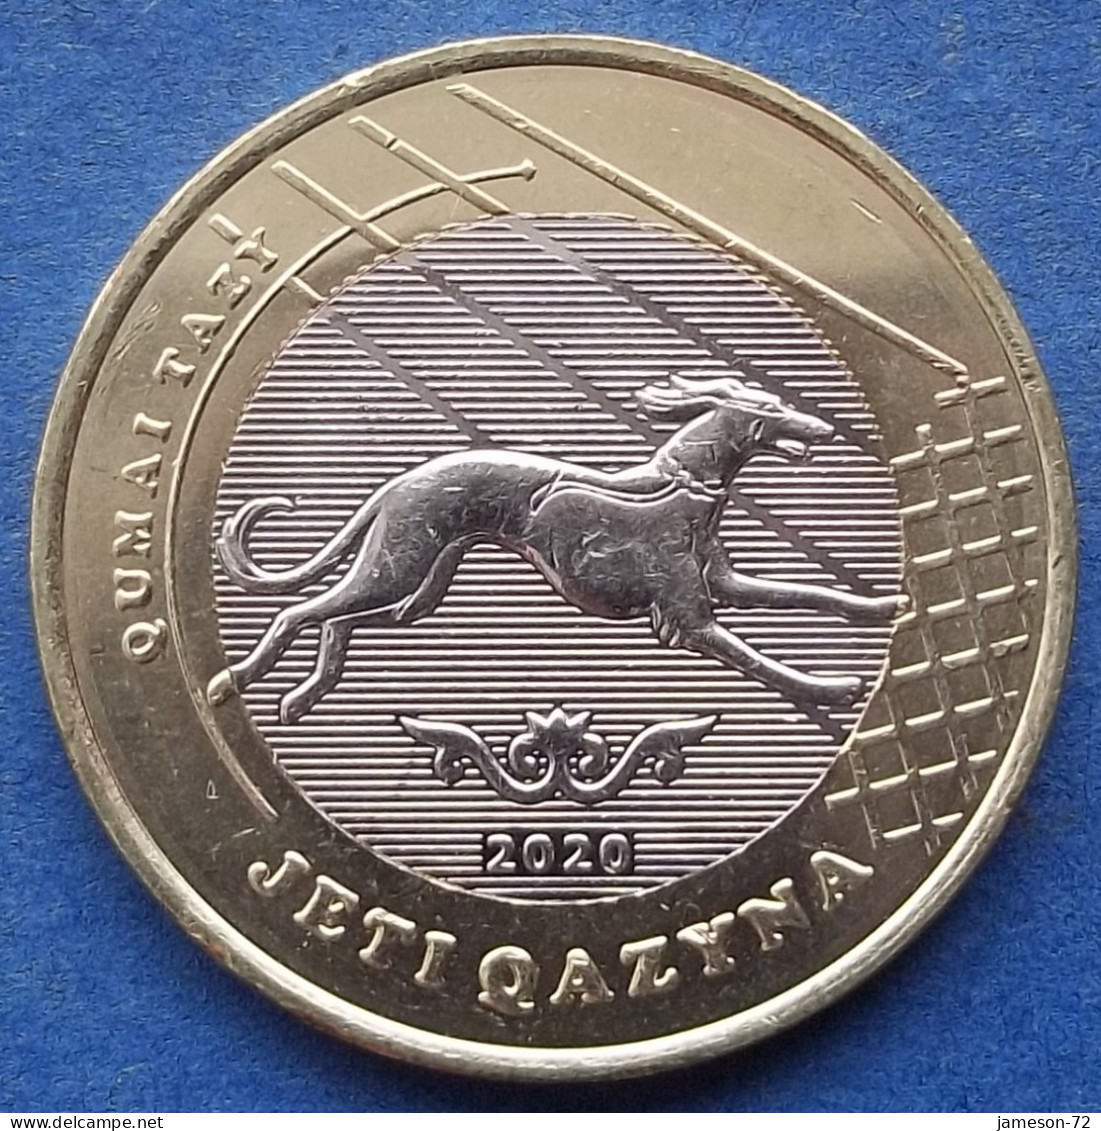 KAZAKHSTAN - 100 Tenge 2020 "Qumai Tazy" KM# 489 Independent Republic (1991) - Edelweiss Coins - Kazakhstan